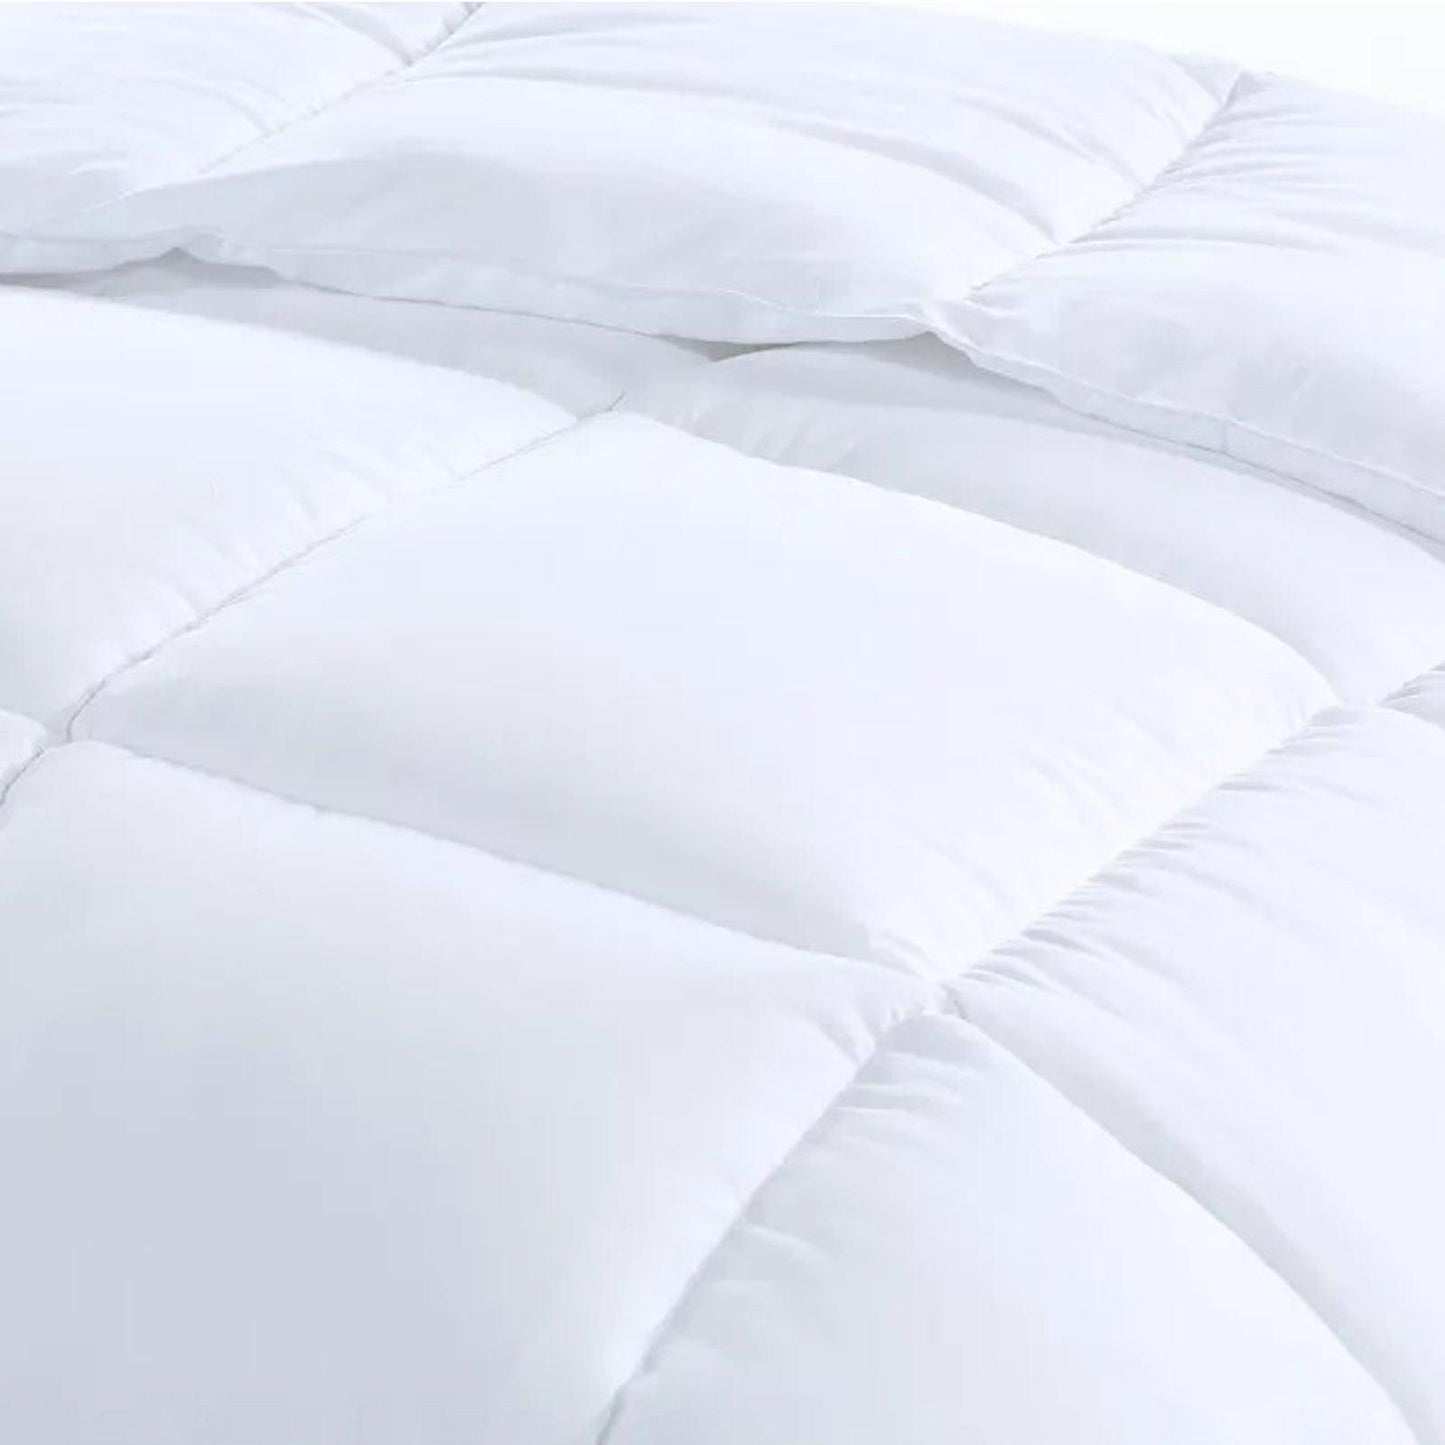 Royal Comfort 800GSM Silk Blend Quilt Duvet Ultra Warm Winter Weight - Queen - White